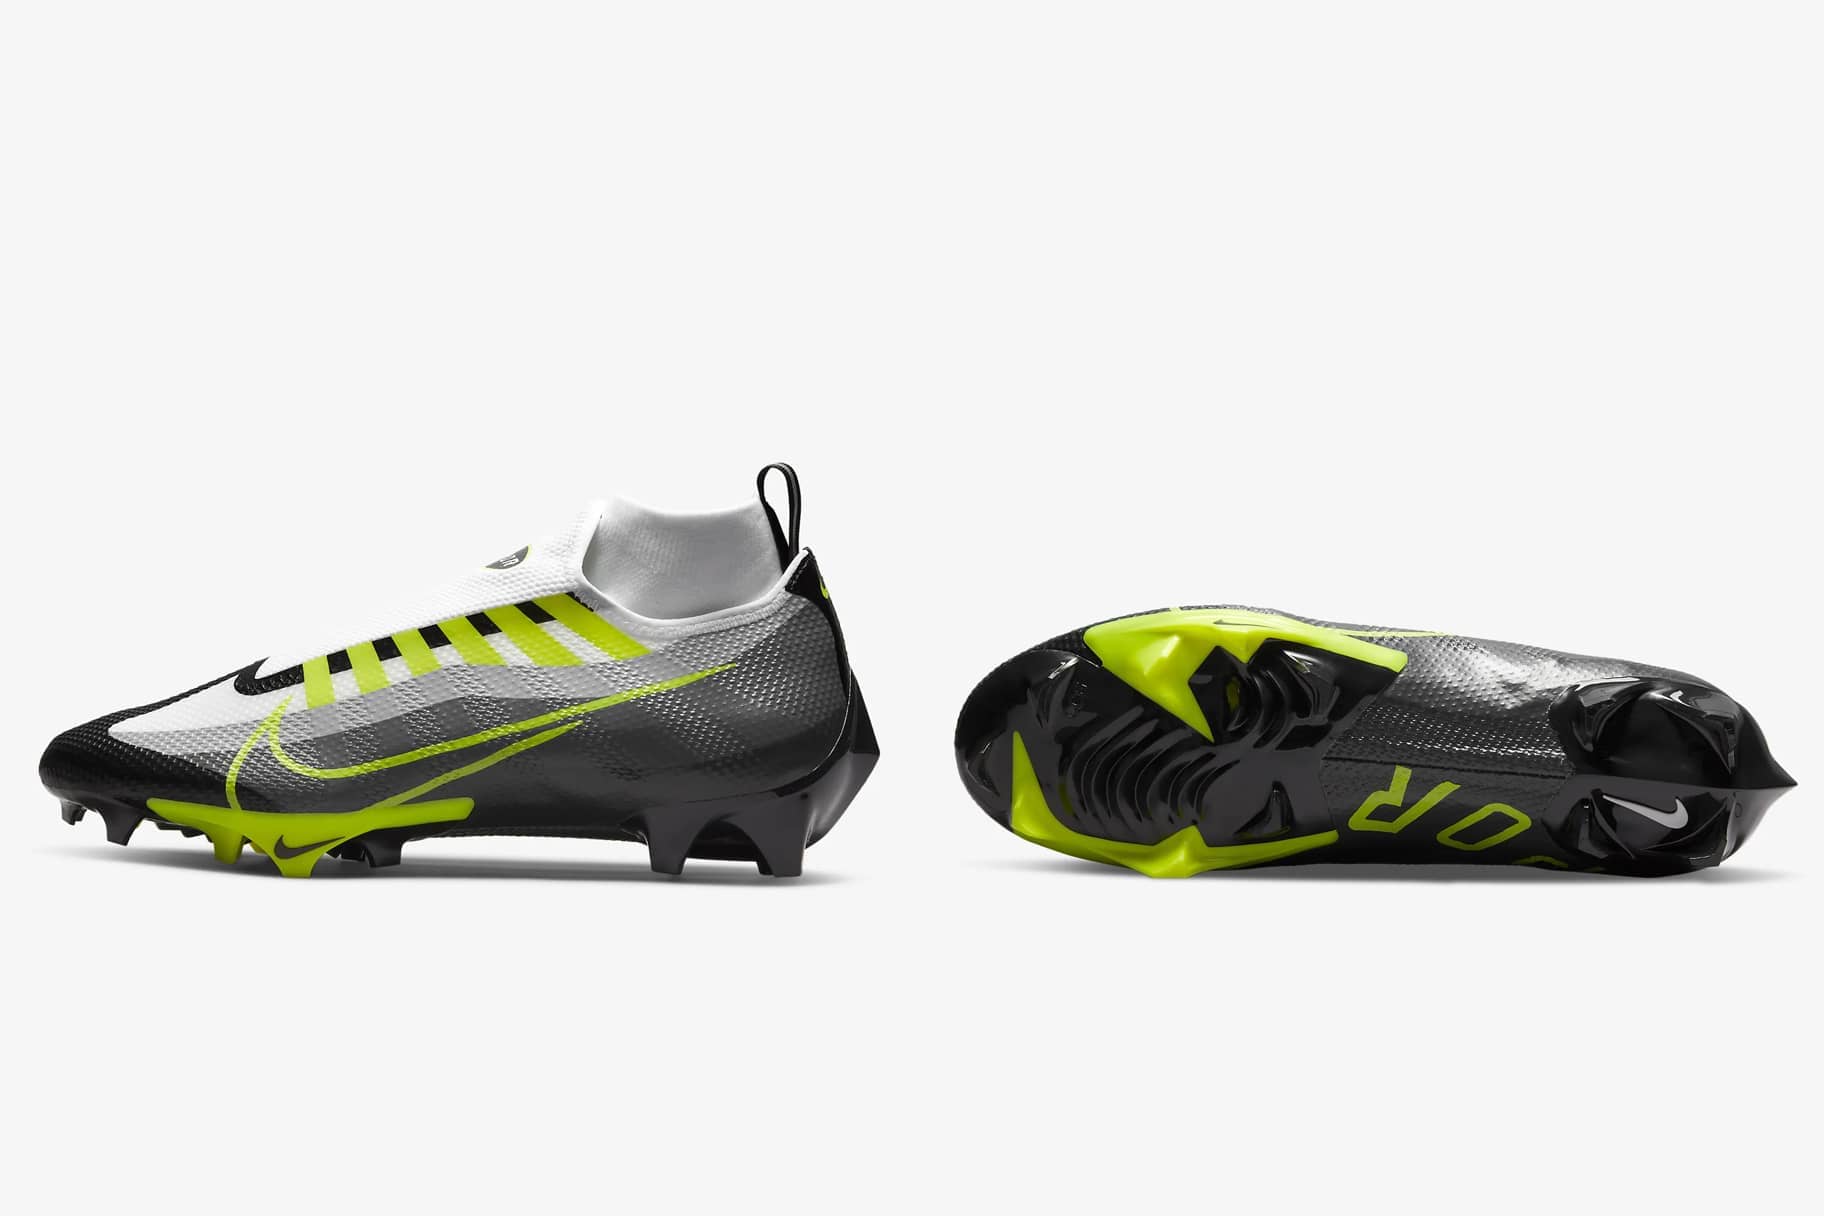 ventaja No es suficiente Juramento El mejor calzado de fútbol Nike para usar esta temporada. Nike MX